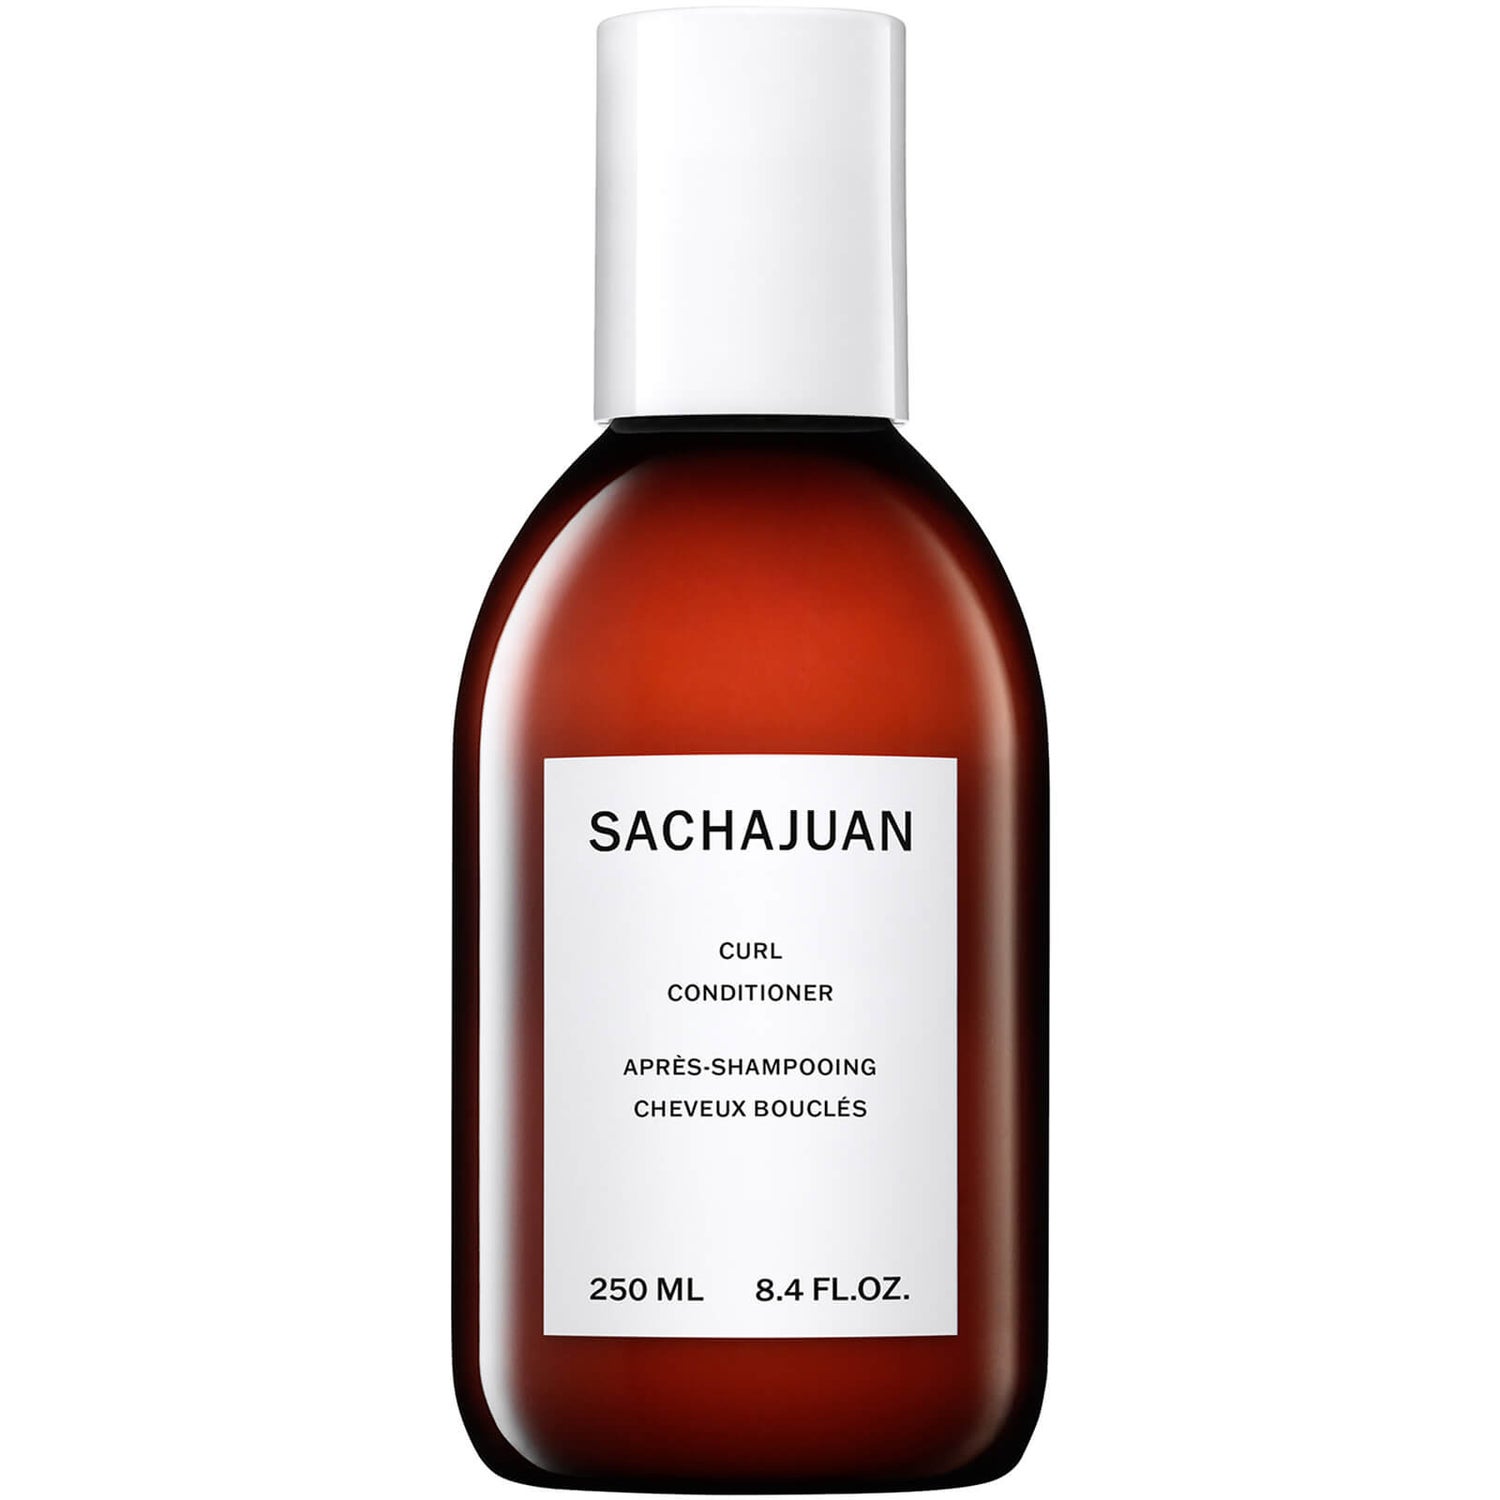 Sachajuan Curl Conditioner (250 ml.)